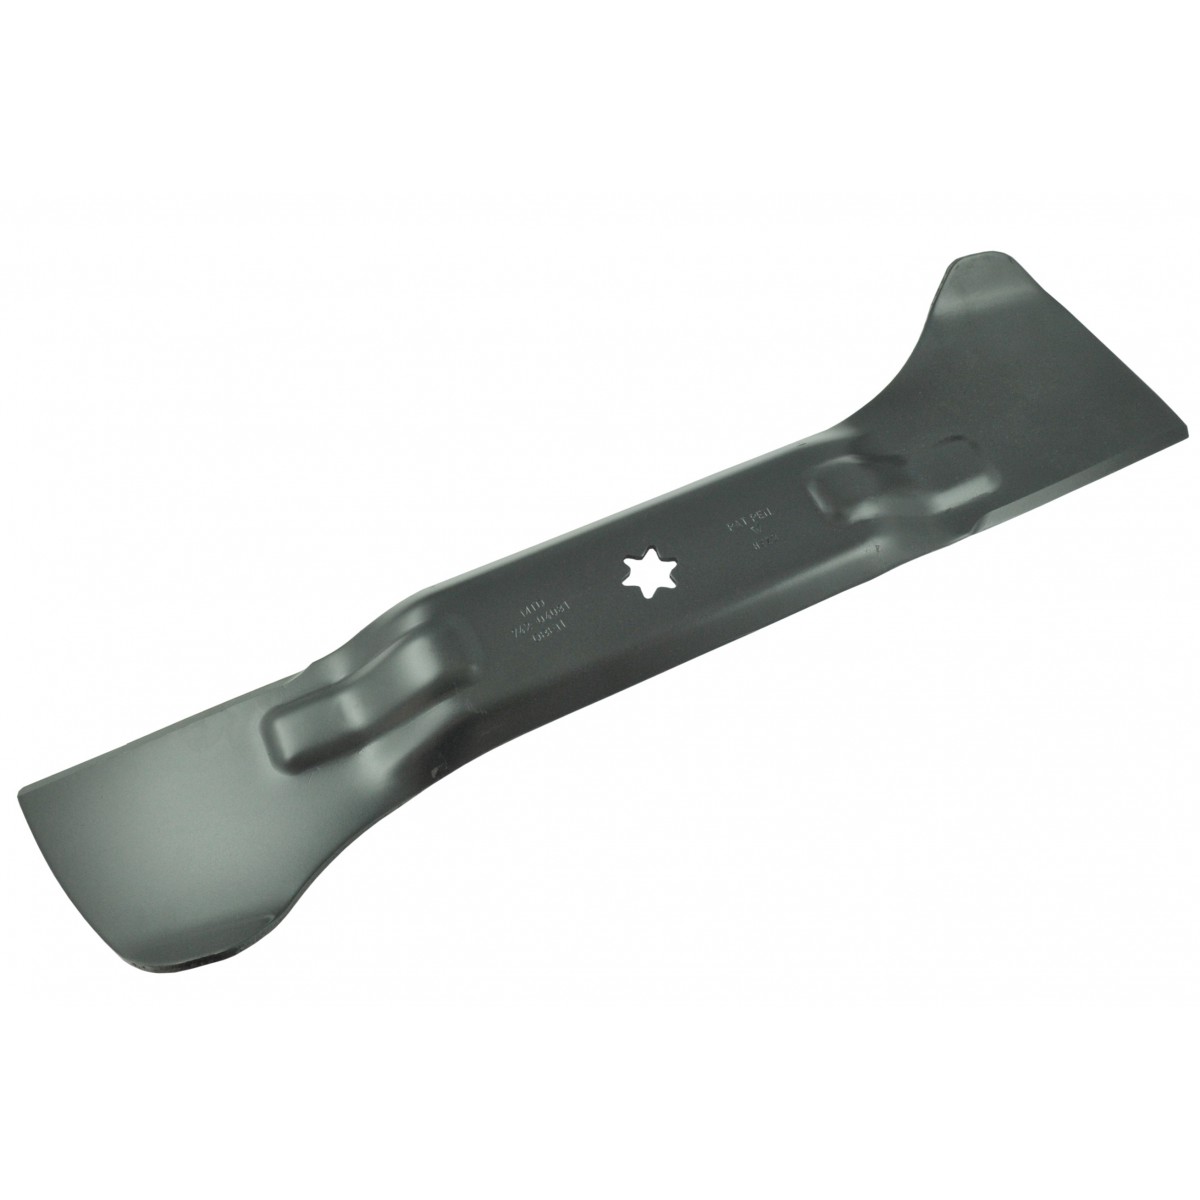 Knife 535 mm for Cub Cadet, MTD 742-04081 mower, LEFT